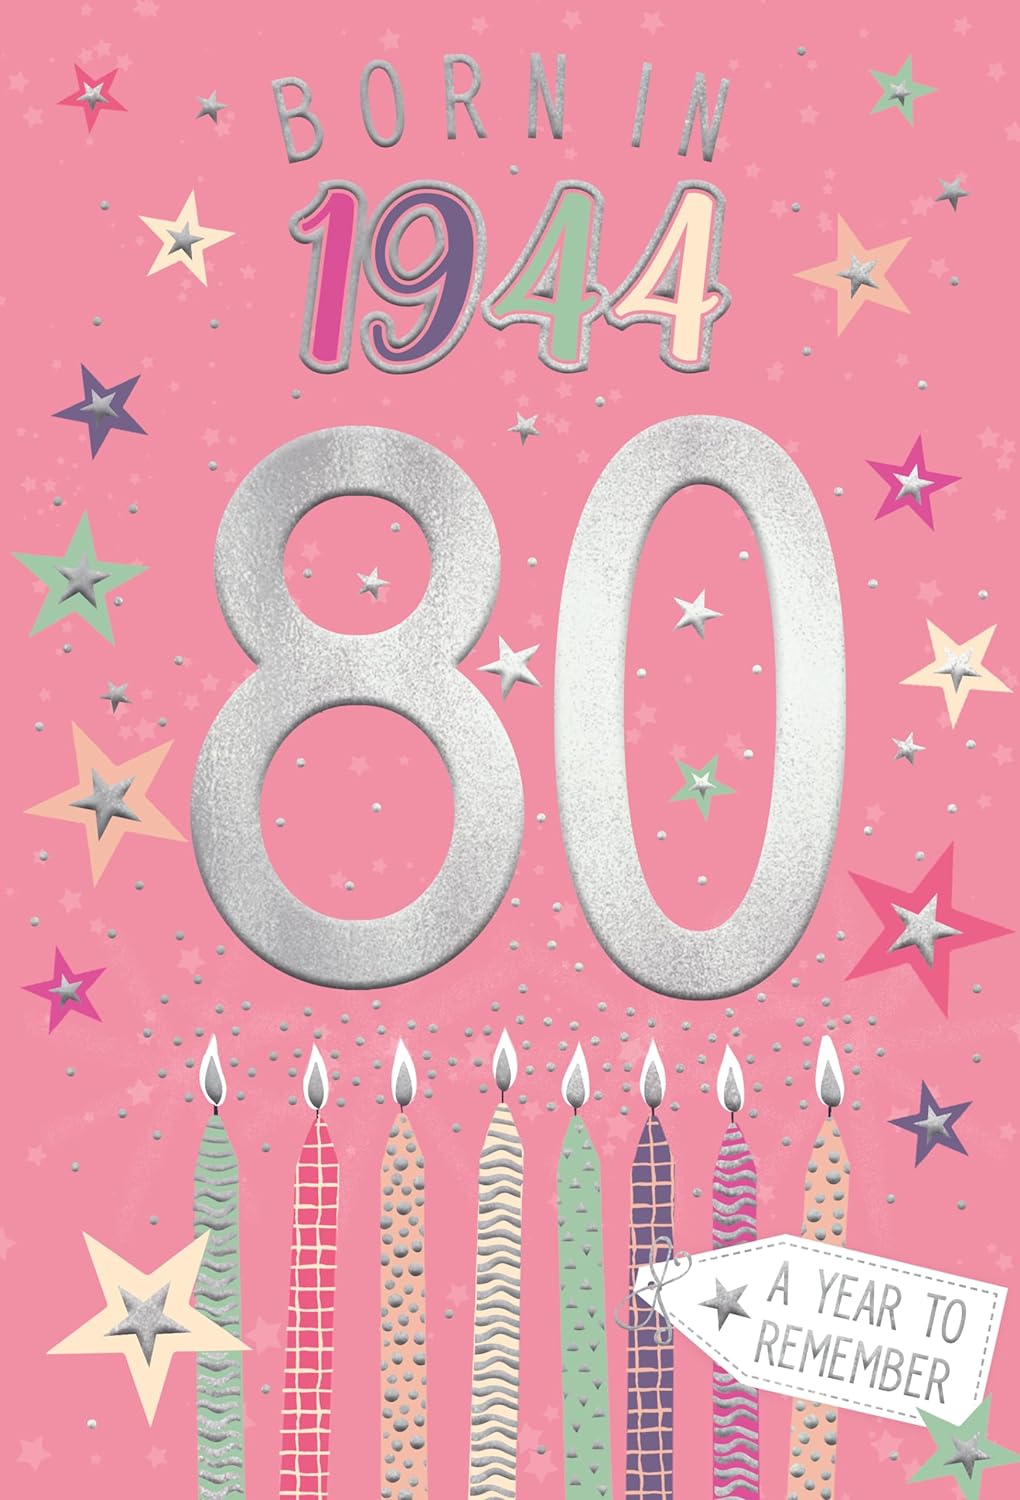 Year You Were Born Greeting Card Tri Fold - Age 80 - 80th Birthday Female